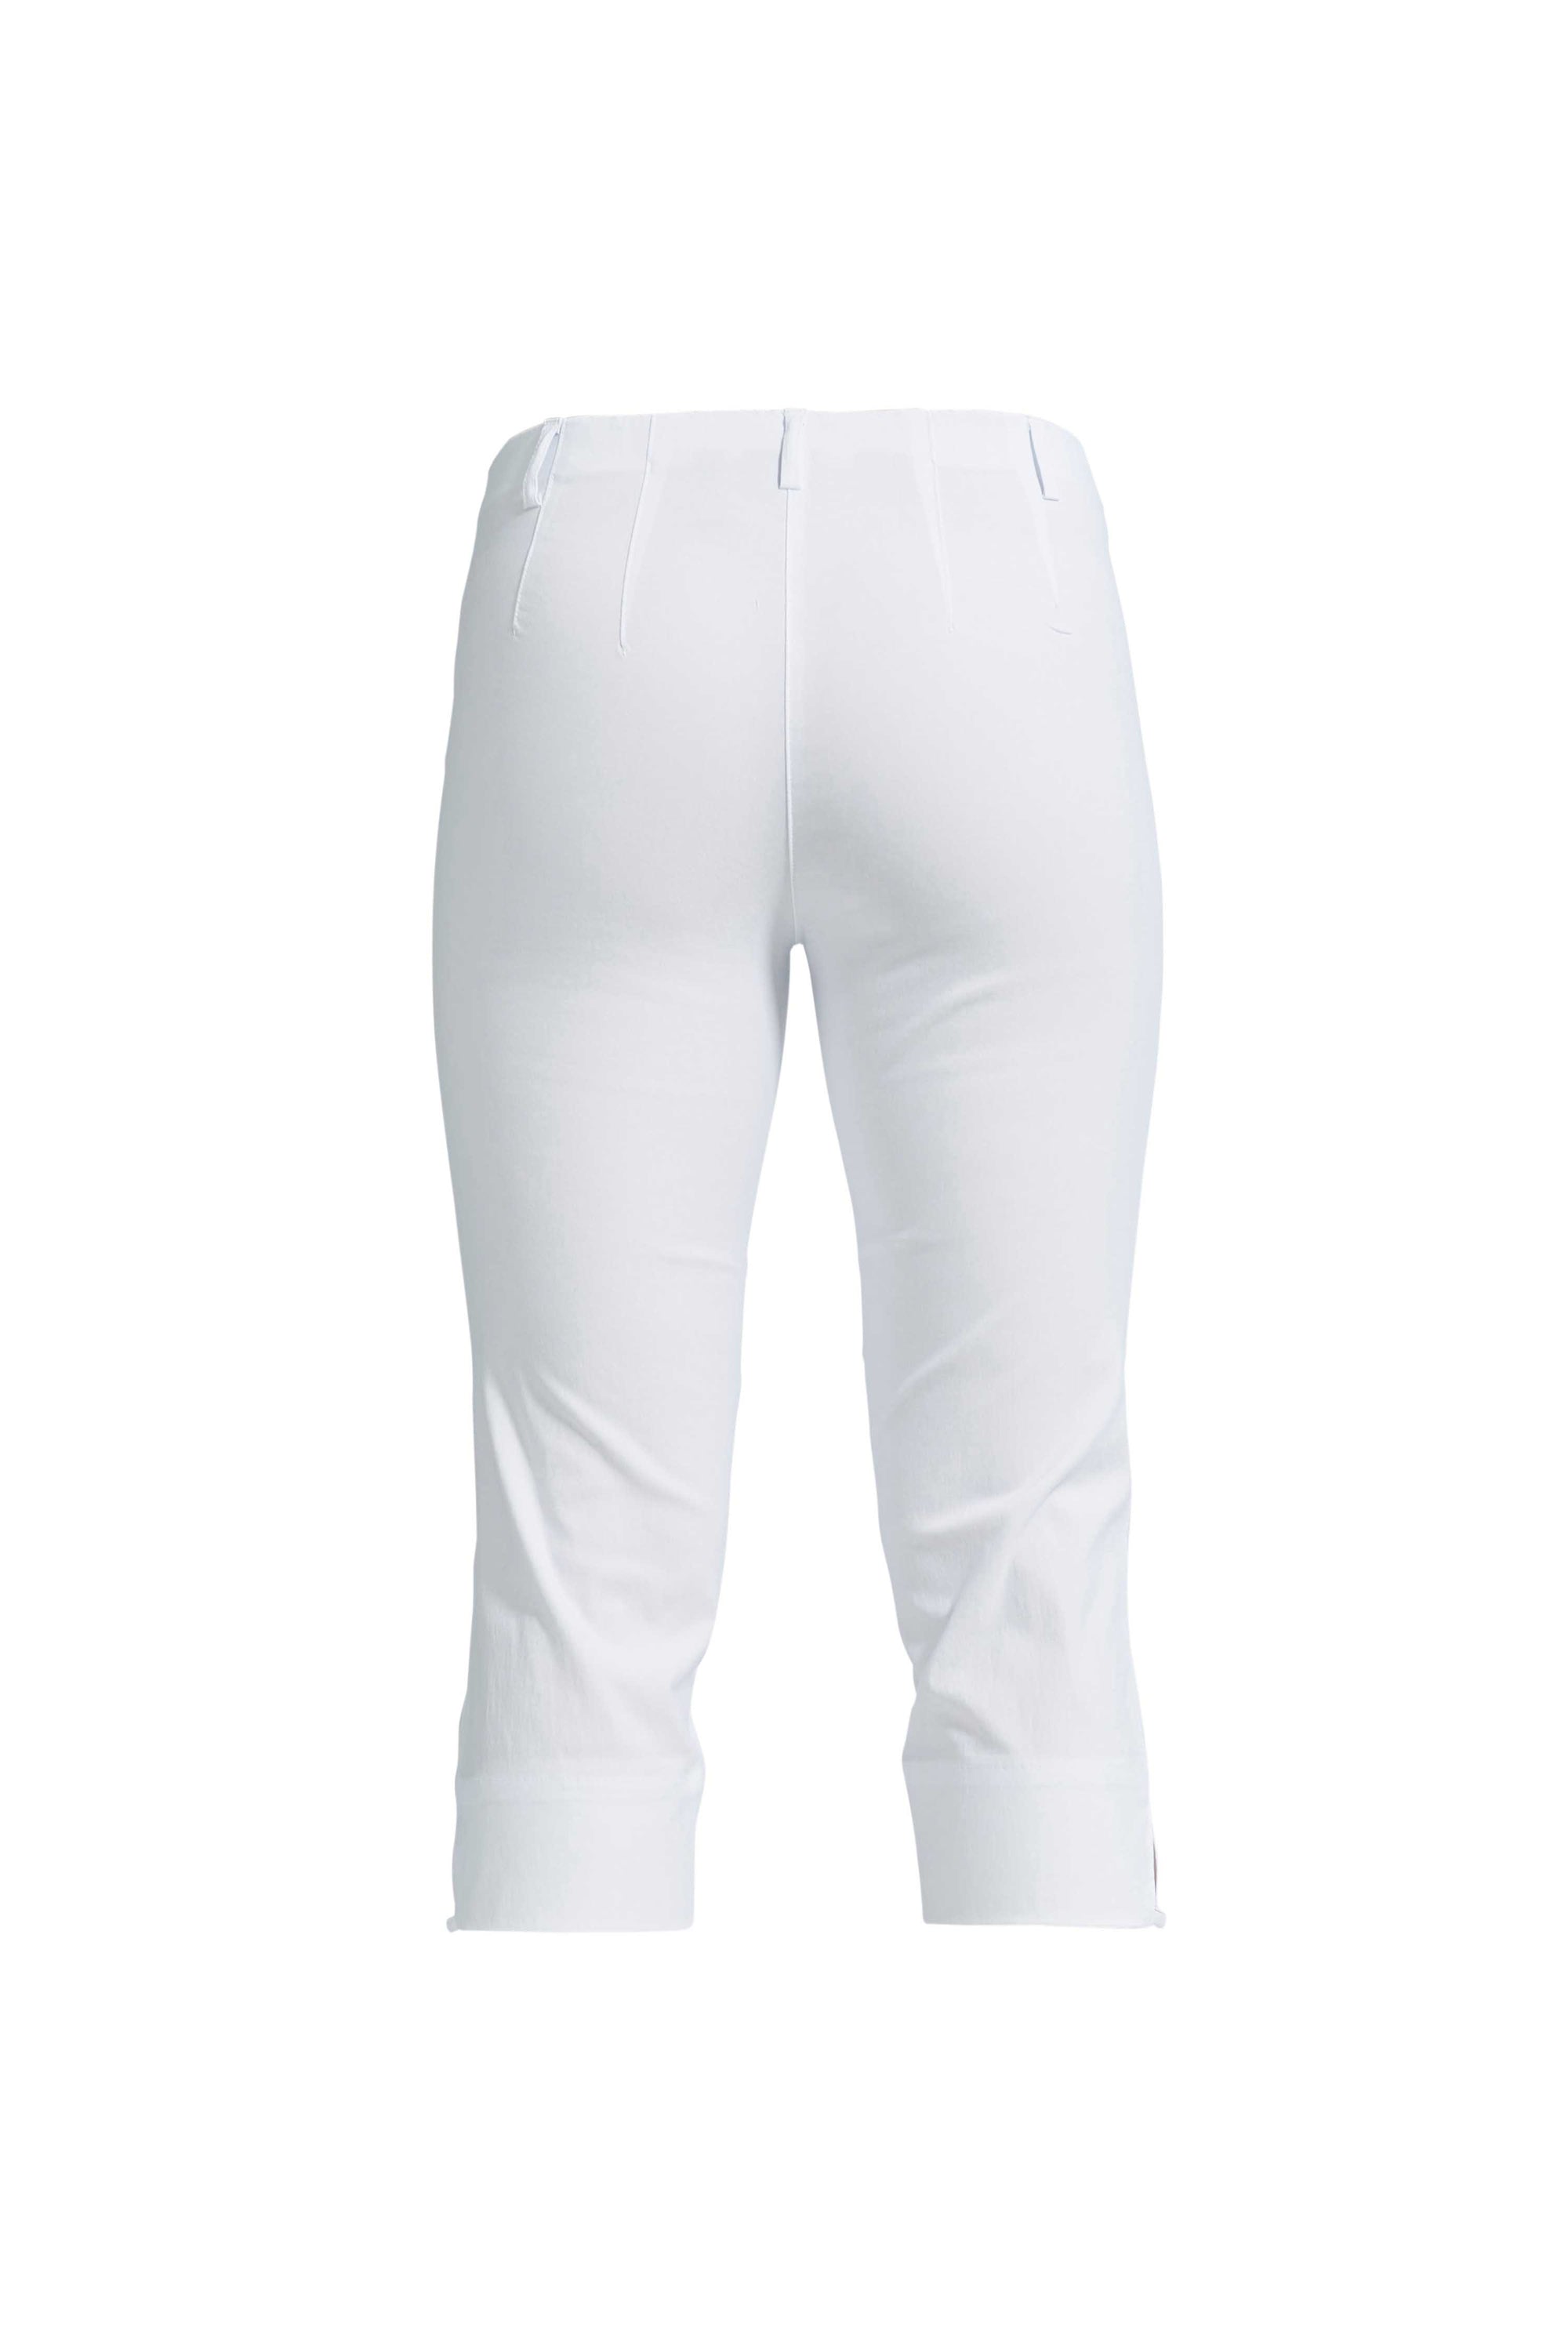 LAURIE Anabelle Regular Capri ML Trousers REGULAR 10970 White